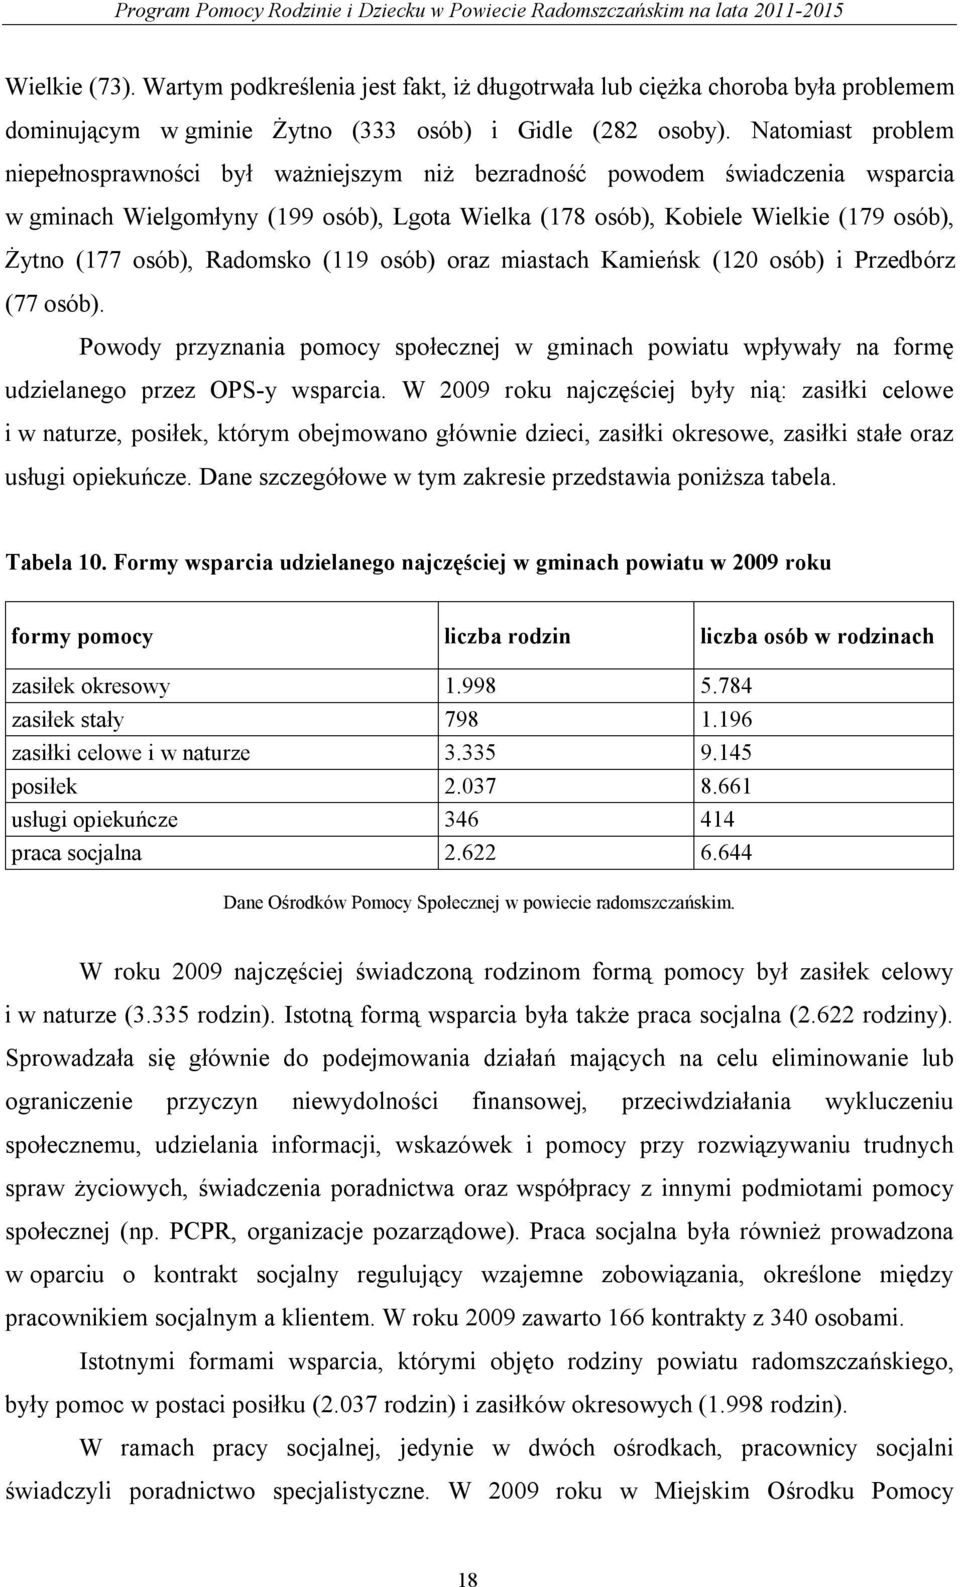 osób), Radomsko (119 osób) oraz miastach Kamieńsk (120 osób) i Przedbórz (77 osób). Powody przyznania pomocy społecznej w gminach powiatu wpływały na formę udzielanego przez OPS-y wsparcia.